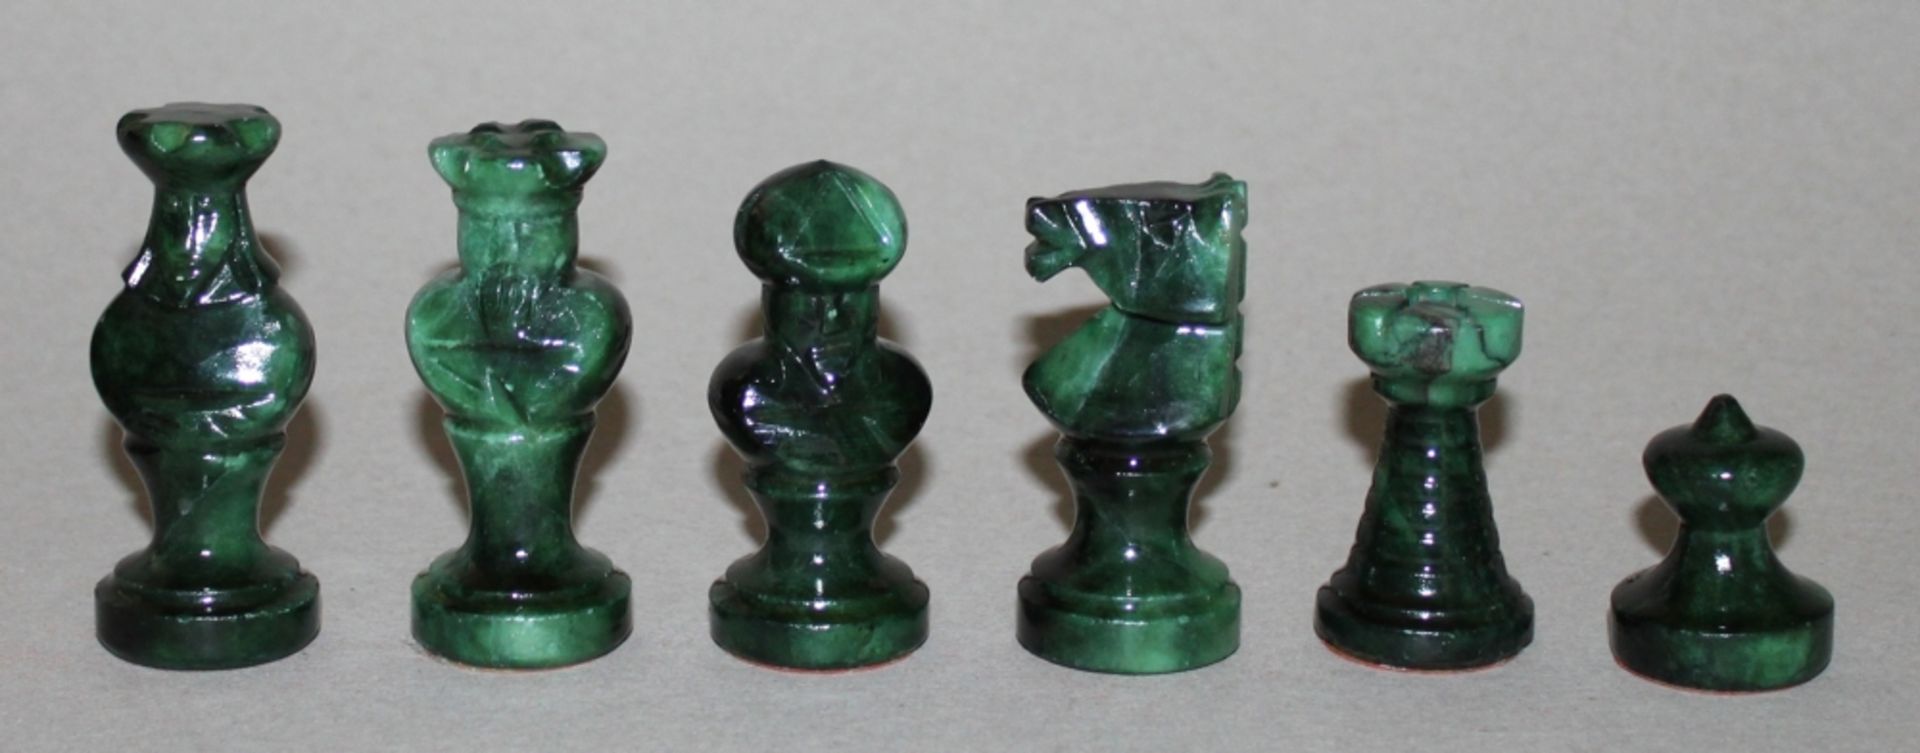 Europa. Italien. Schachspiel aus Marmor. Die eine Partei dunkelgrün, die andere weiß / - Bild 3 aus 3